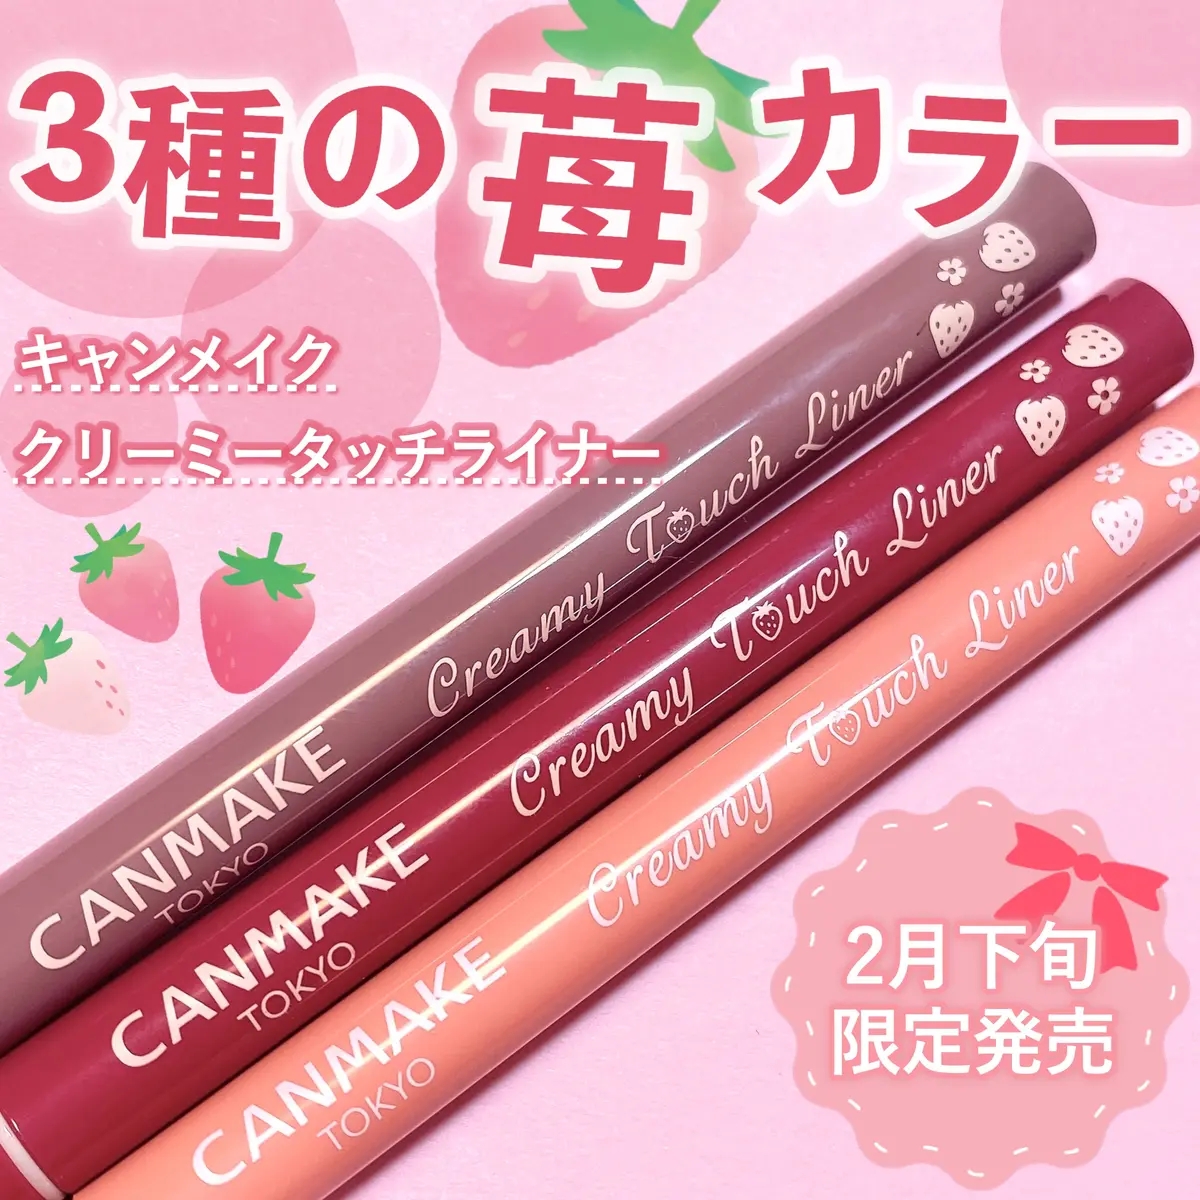 莓莓三姐妹~日本CANMAKE防晕染顺滑极细眼线胶笔限定12/13/14草莓